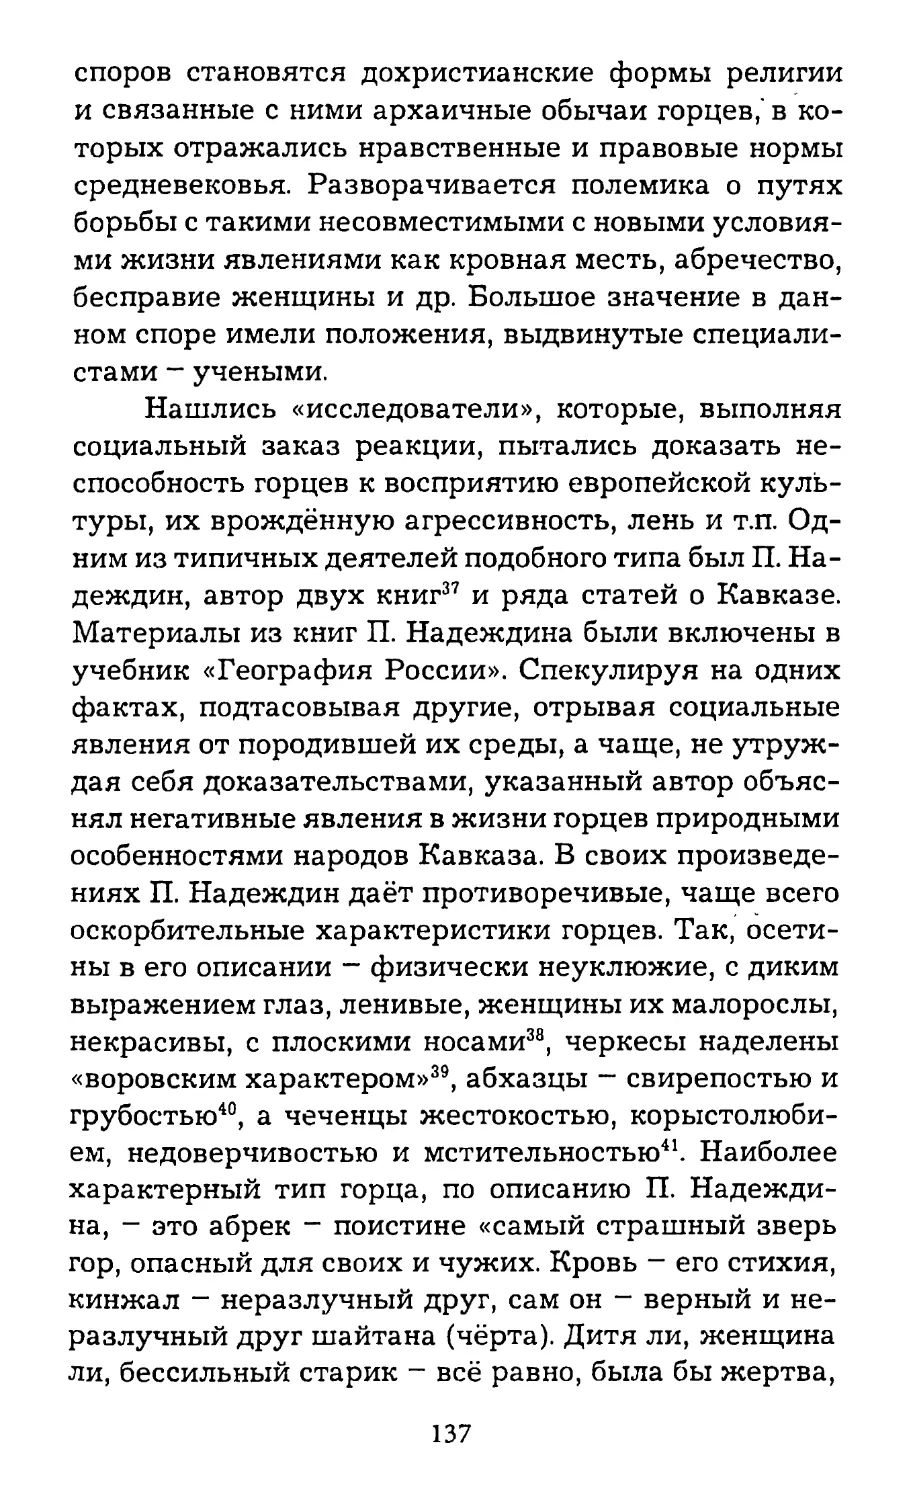 2. Российские ученые в Северной Осетии, их роль в изучении культуры и религии осетин